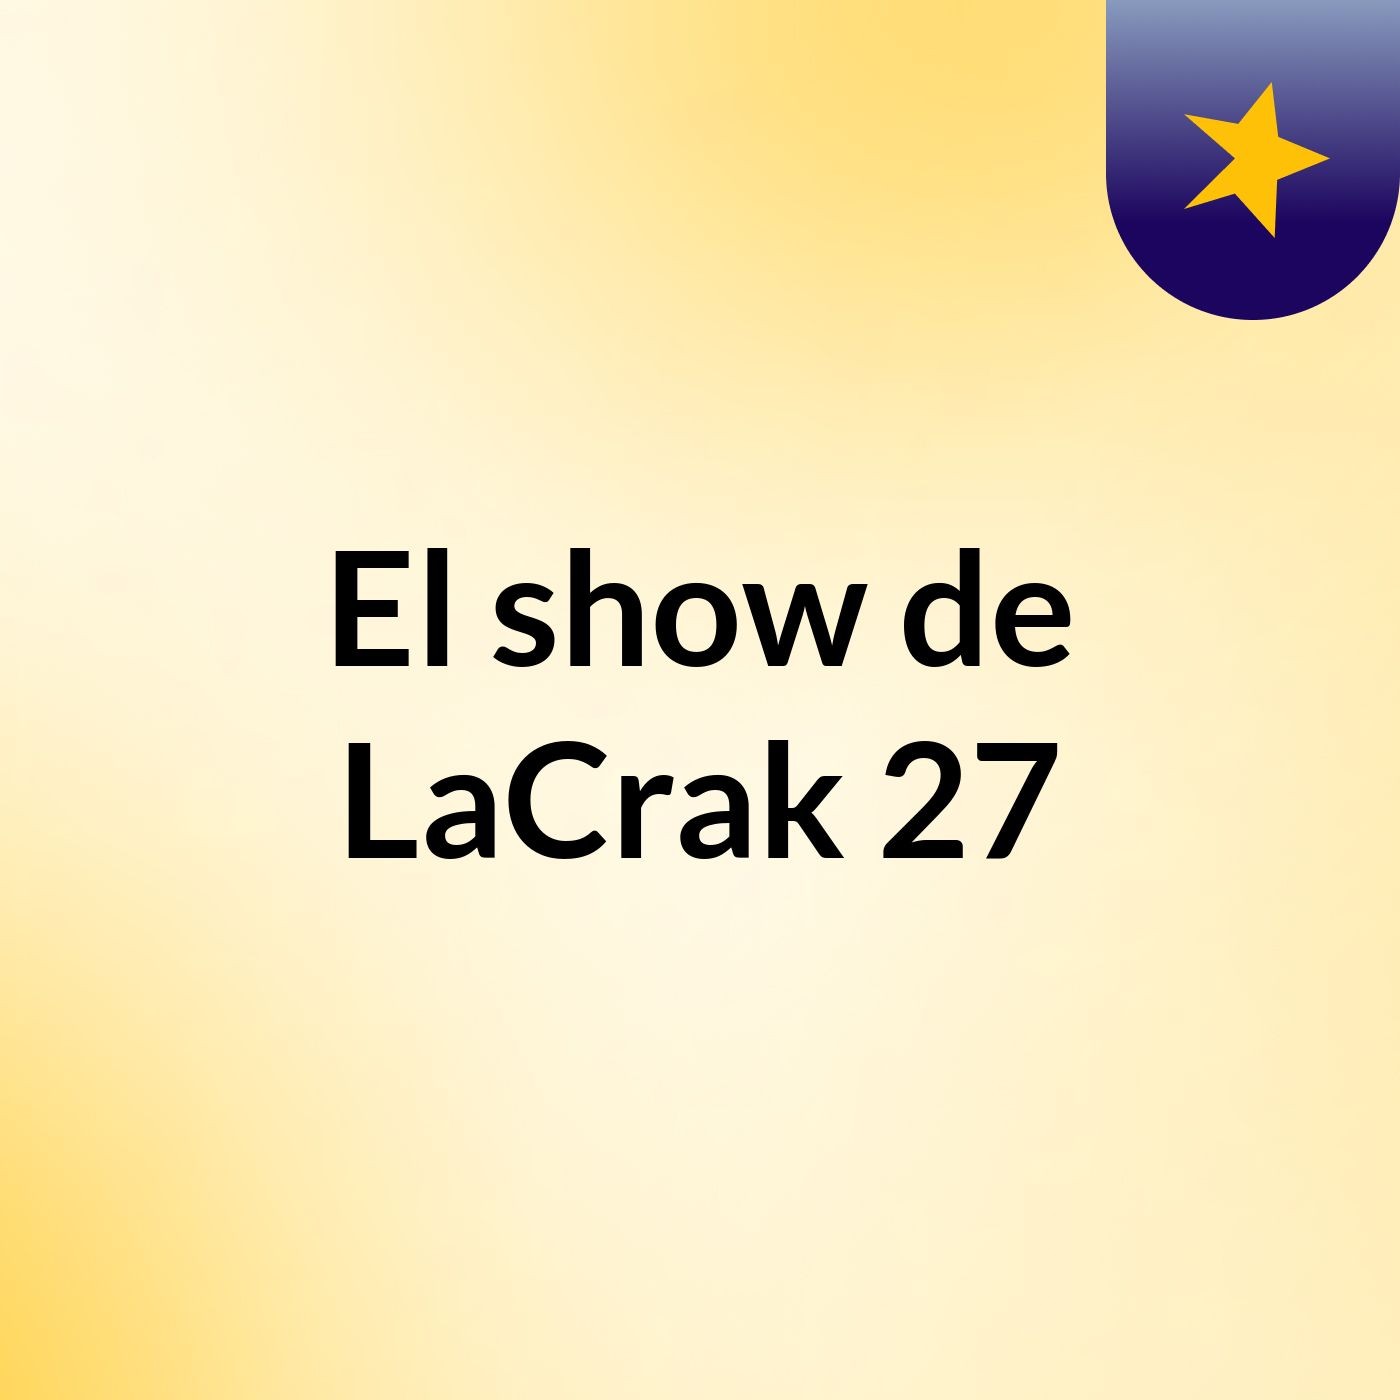 El show de LaCrak 27